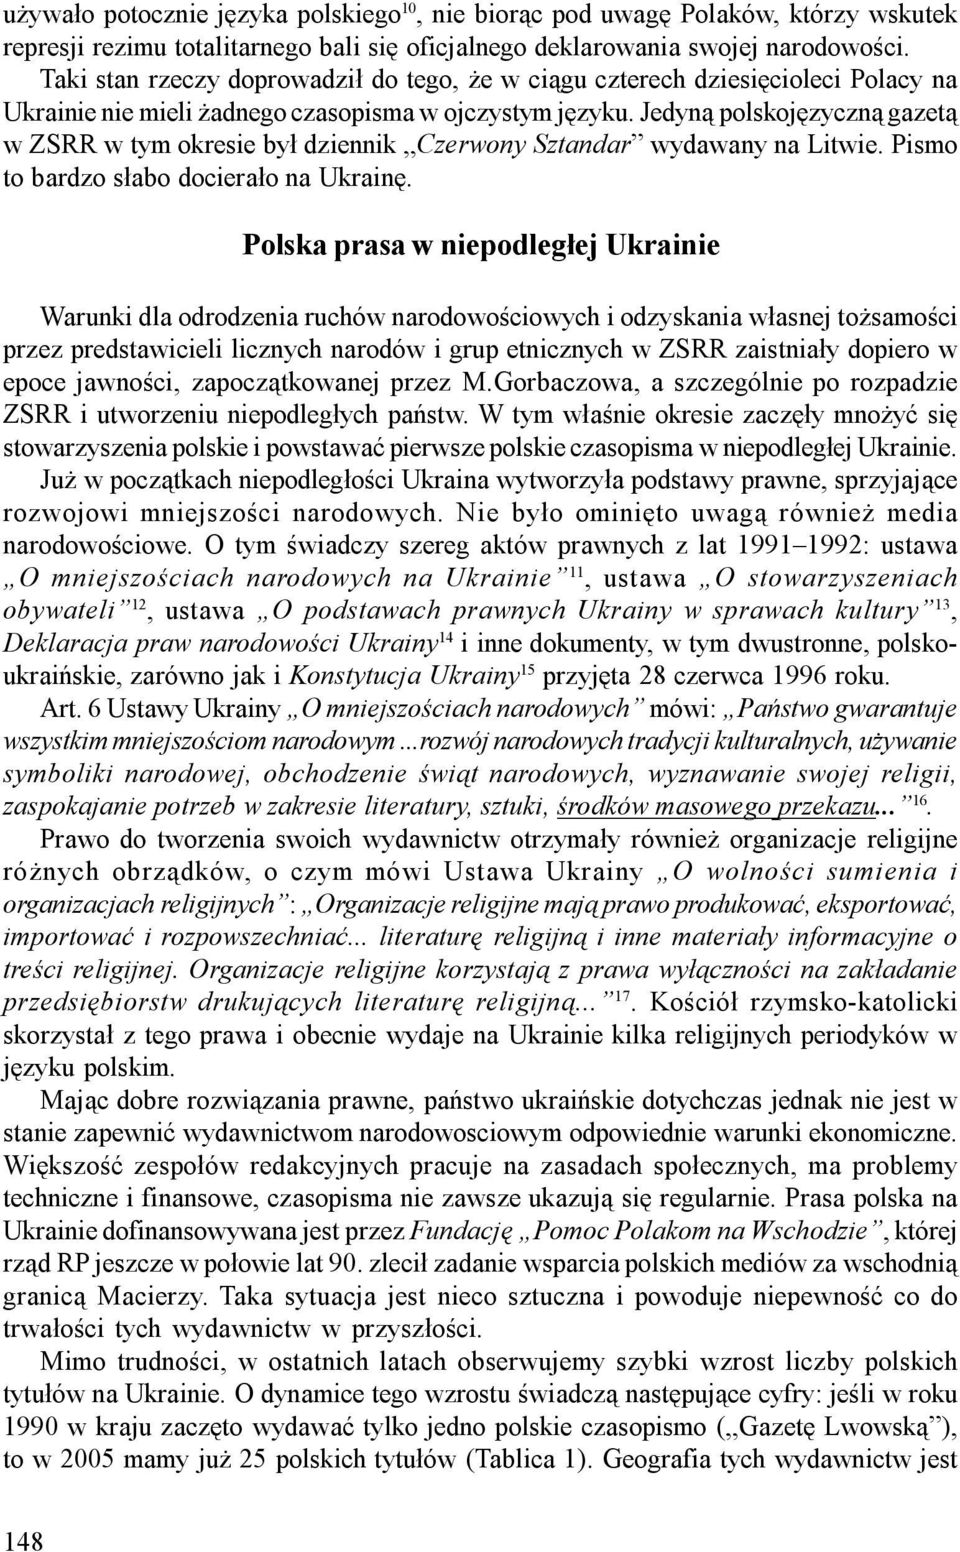 Jedyną polskojęzyczną gazetą w ZSRR w tym okresie był dziennik Czerwony Sztandar wydawany na Litwie. Pismo to bardzo słabo docierało na Ukrainę.